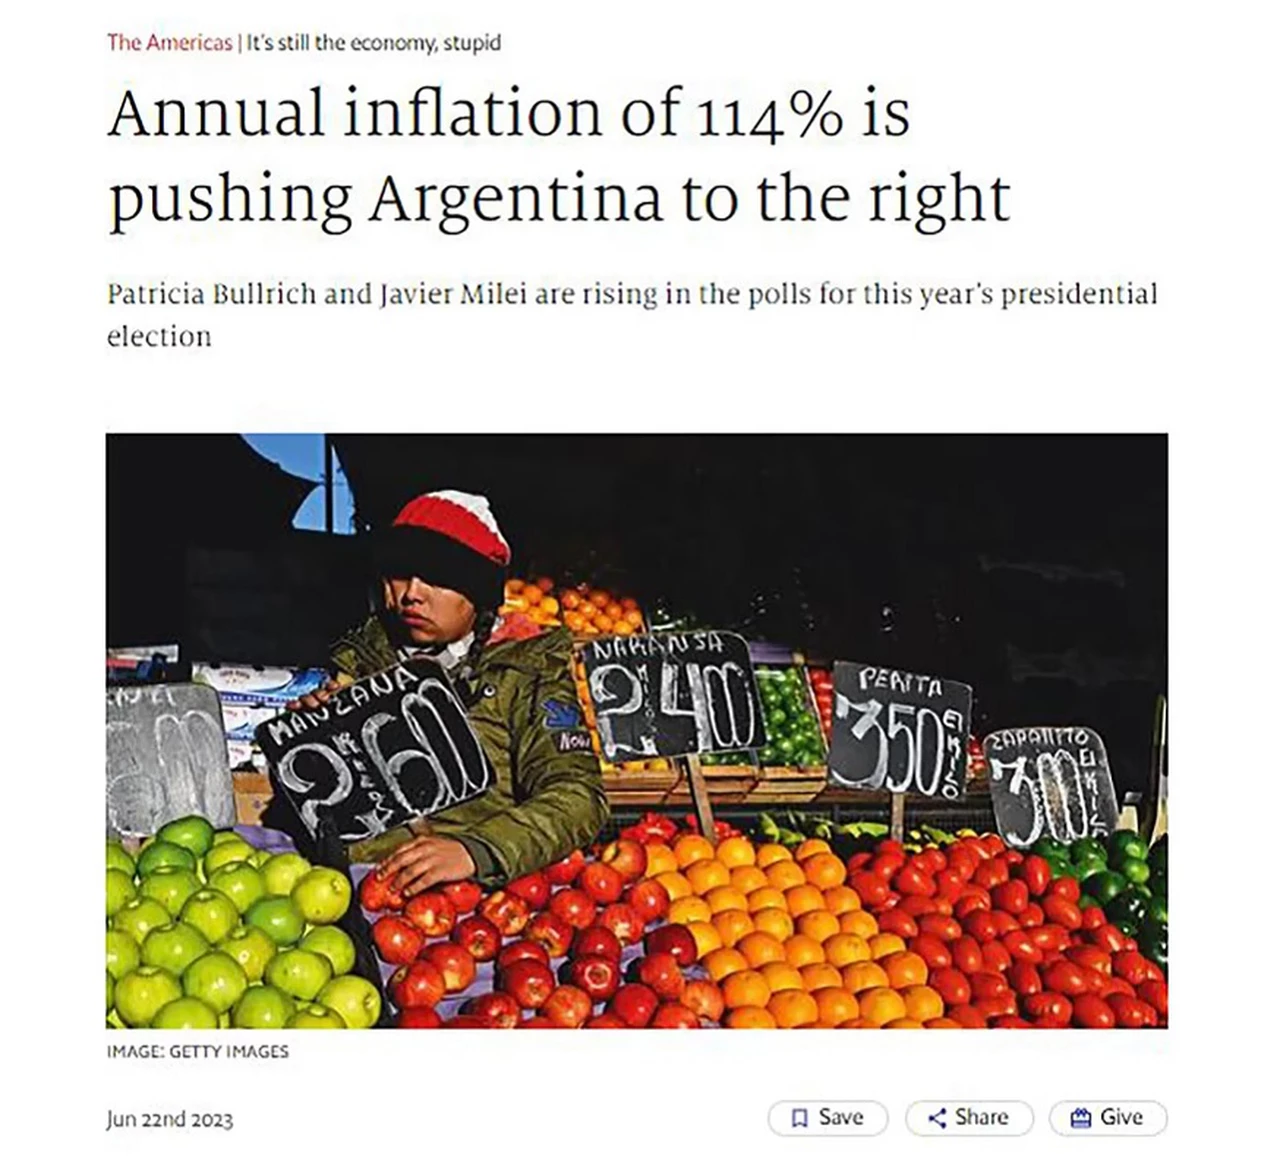 Para The Economist, una inflación anual de 114% empuja a la Argentina hacia la derecha